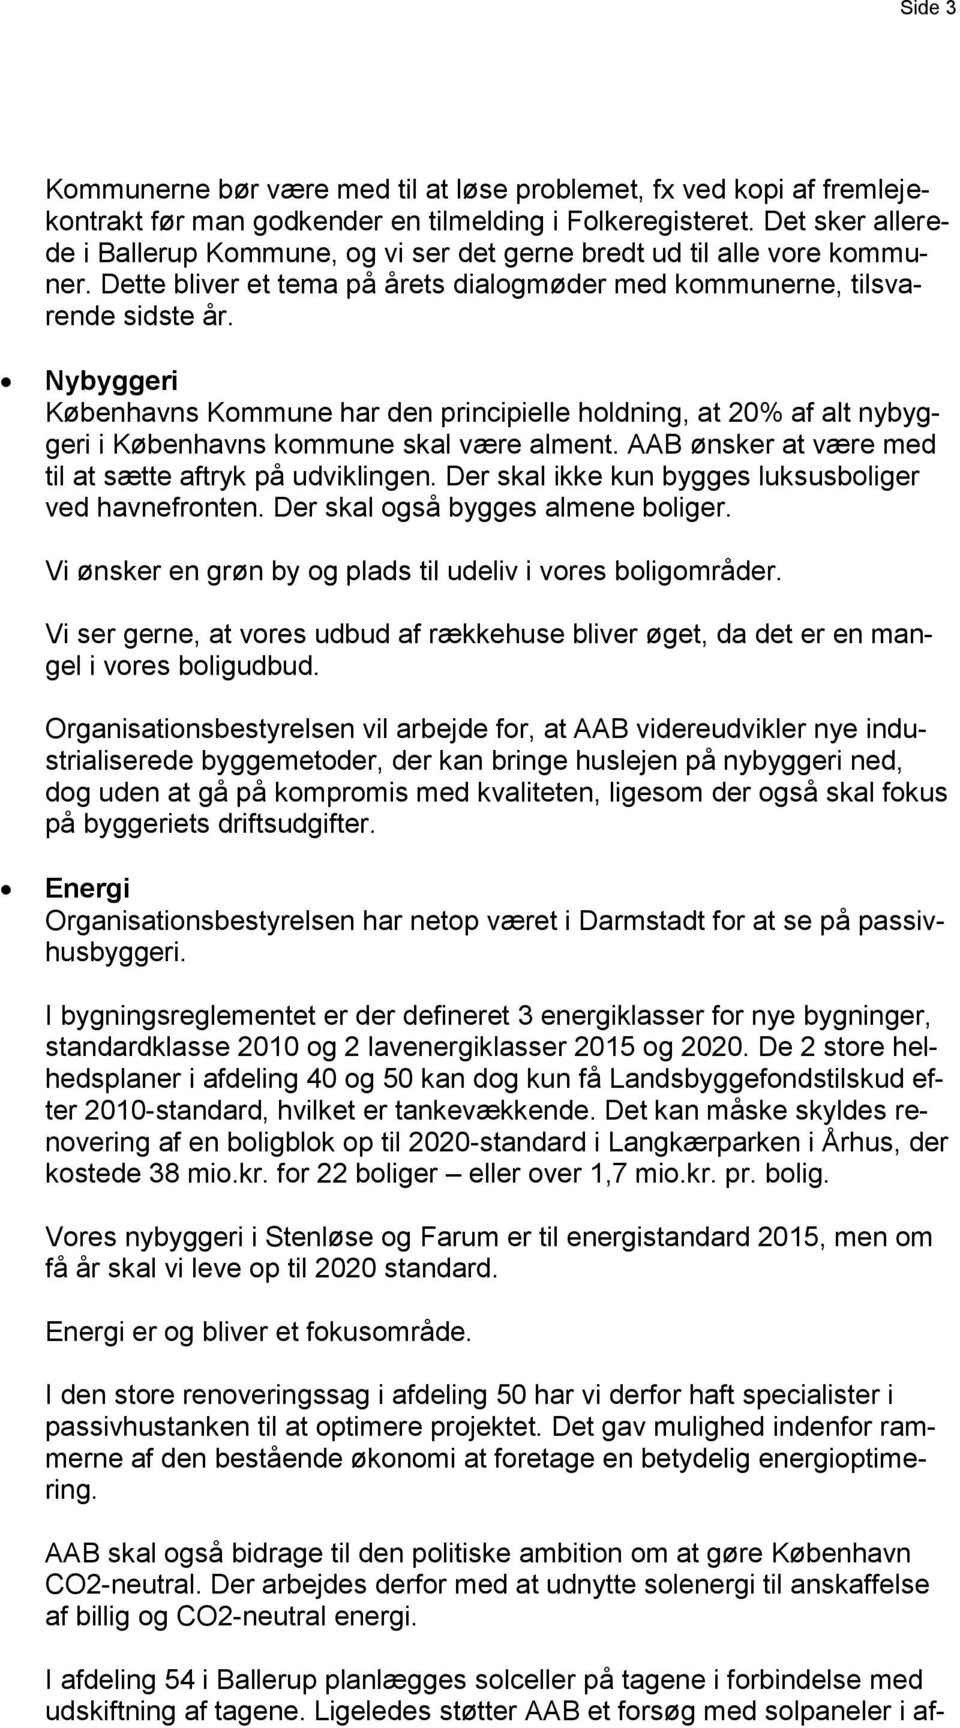 Nybyggeri Københavns Kommune har den principielle holdning, at 20% af alt nybyggeri i Københavns kommune skal være alment. AAB ønsker at være med til at sætte aftryk på udviklingen.